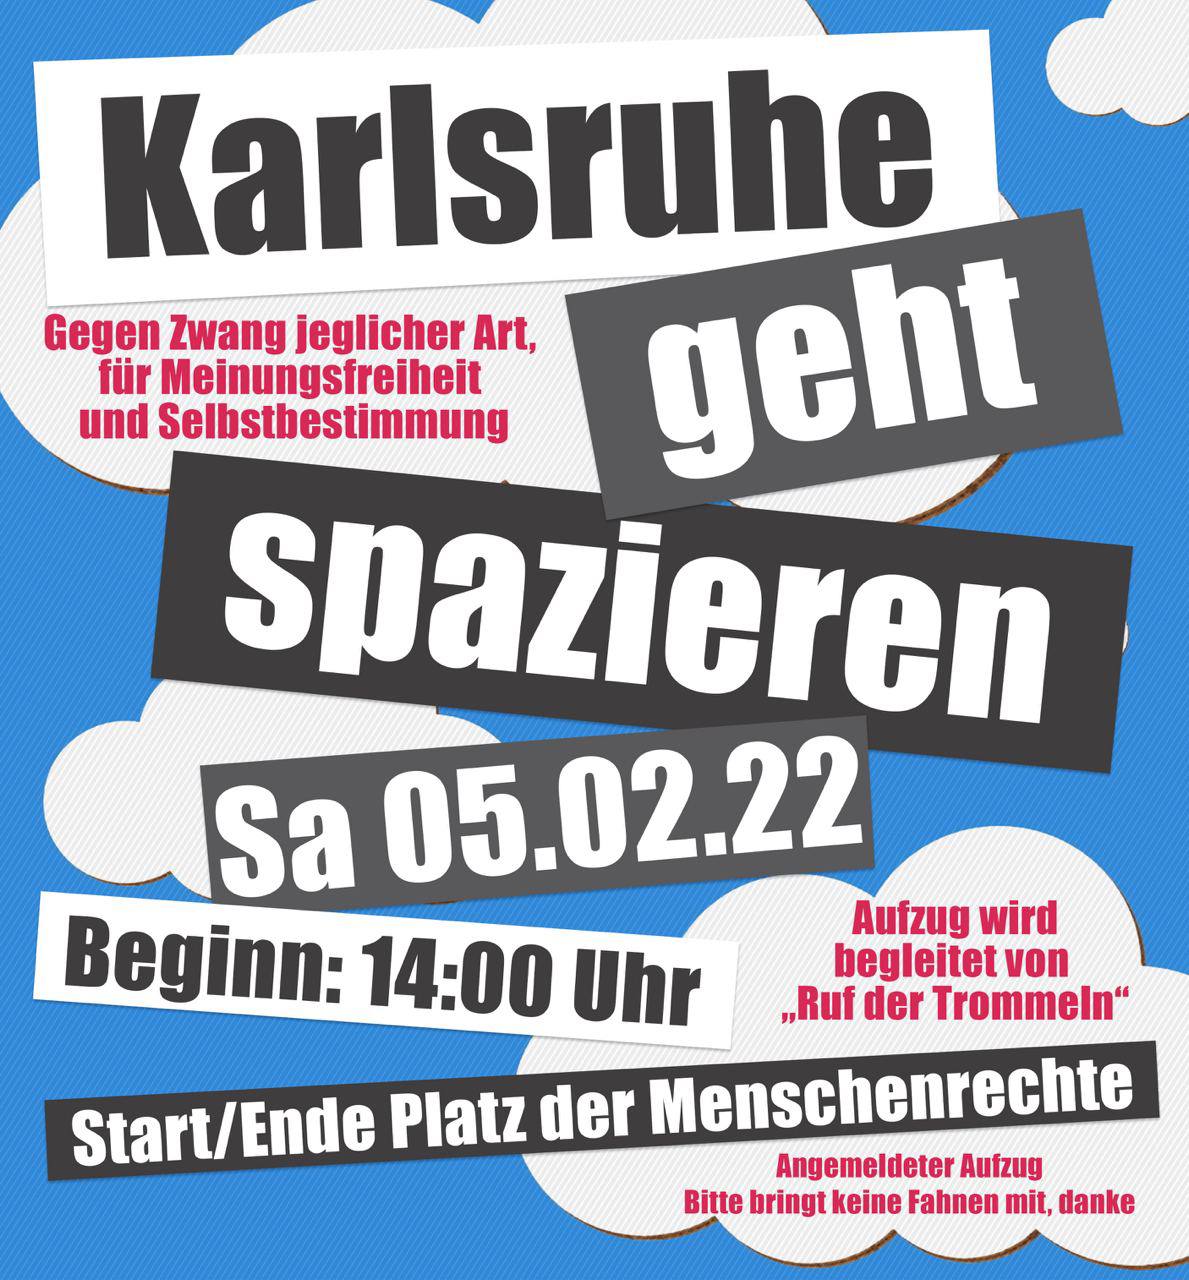 Karlsruhe geht spazieren - Kundgebung mit Aufzug - Karlsruhe Platz der Menschenrechte 05.02.2022 14:00 Uhr